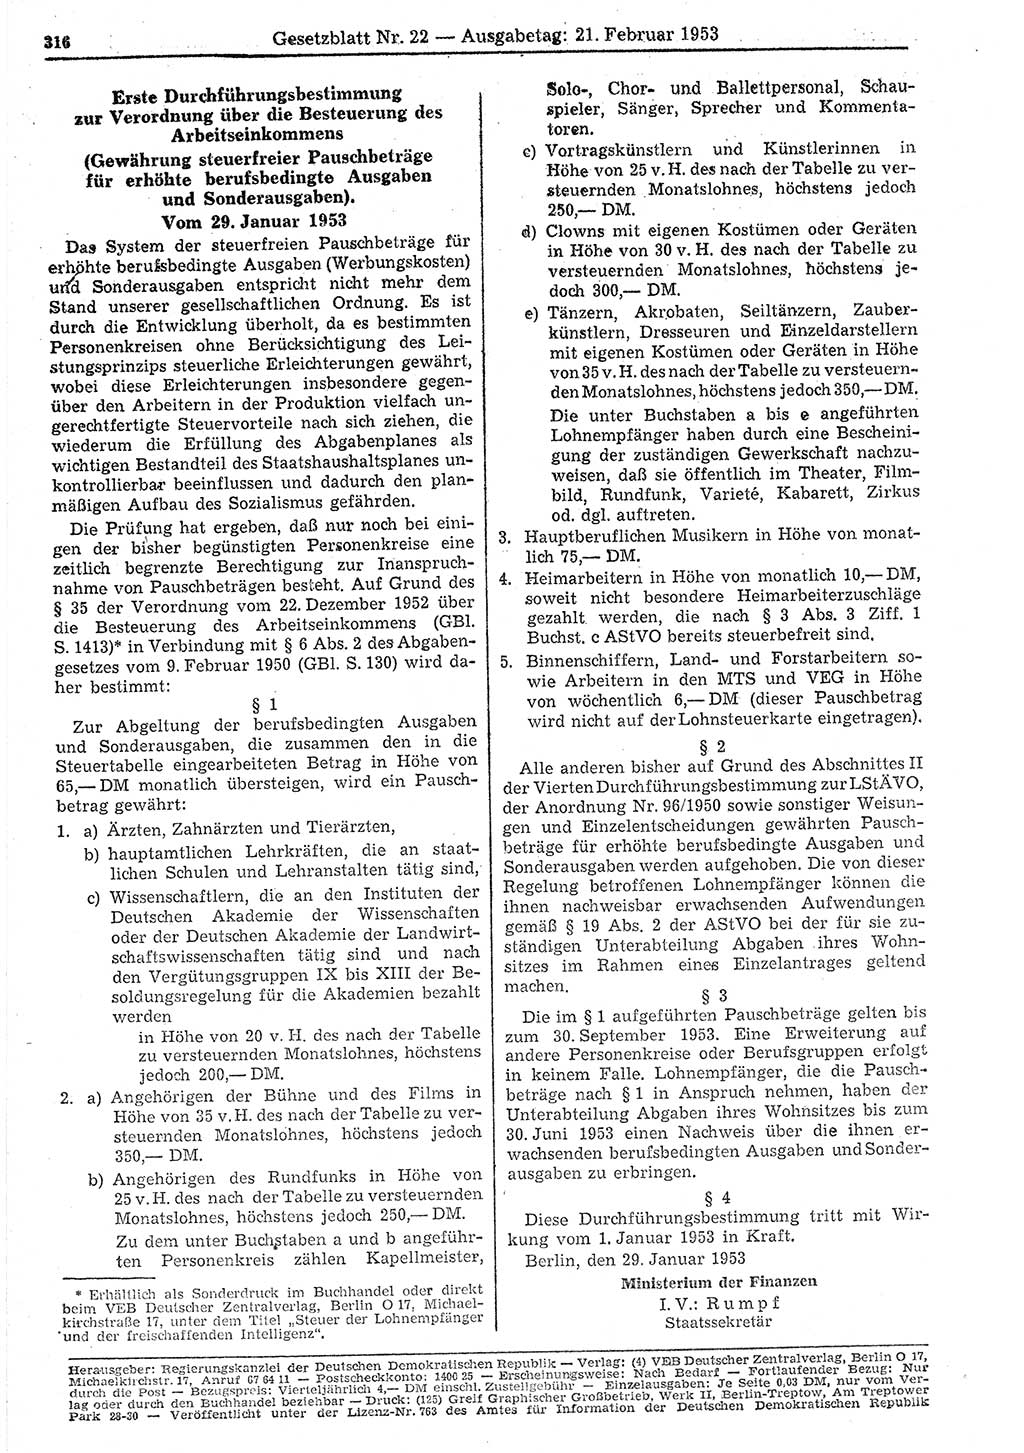 Gesetzblatt (GBl.) der Deutschen Demokratischen Republik (DDR) 1953, Seite 316 (GBl. DDR 1953, S. 316)